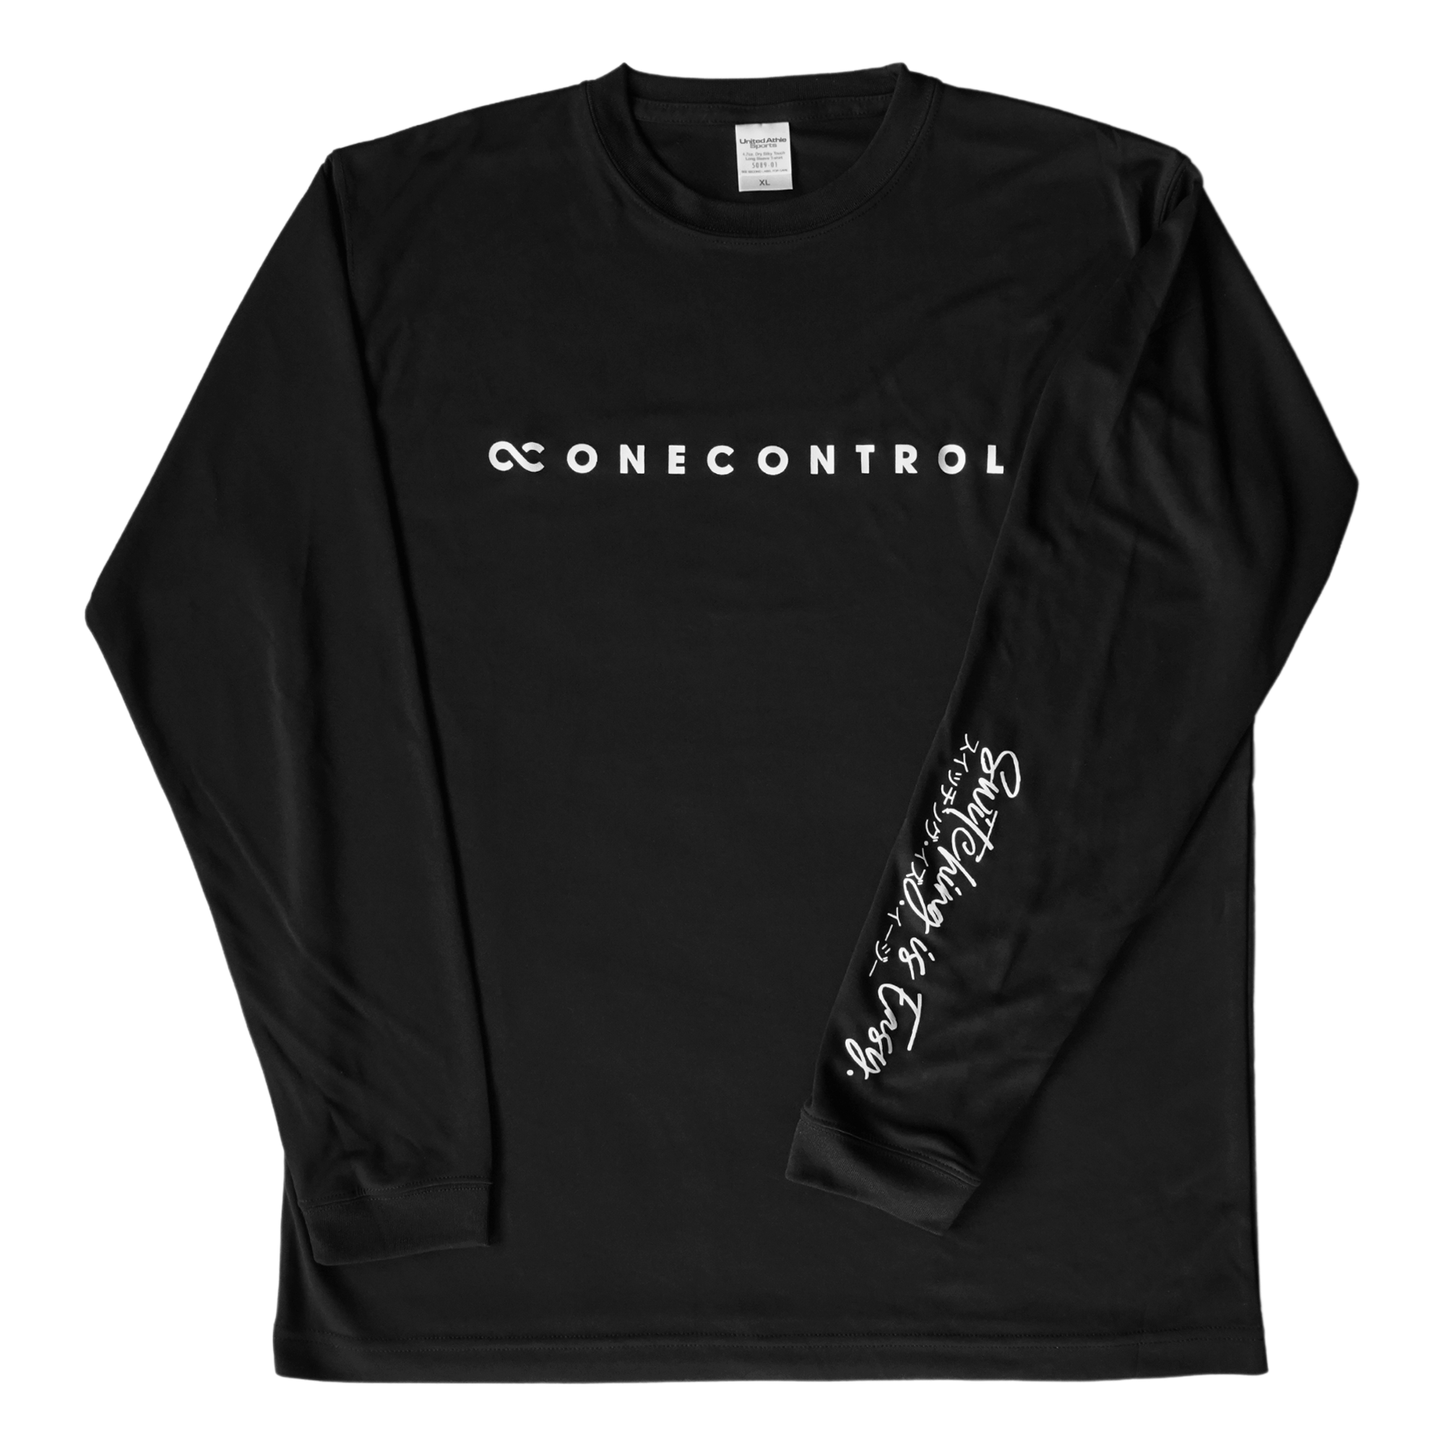 One Control / ロゴロングTシャツ ブラック